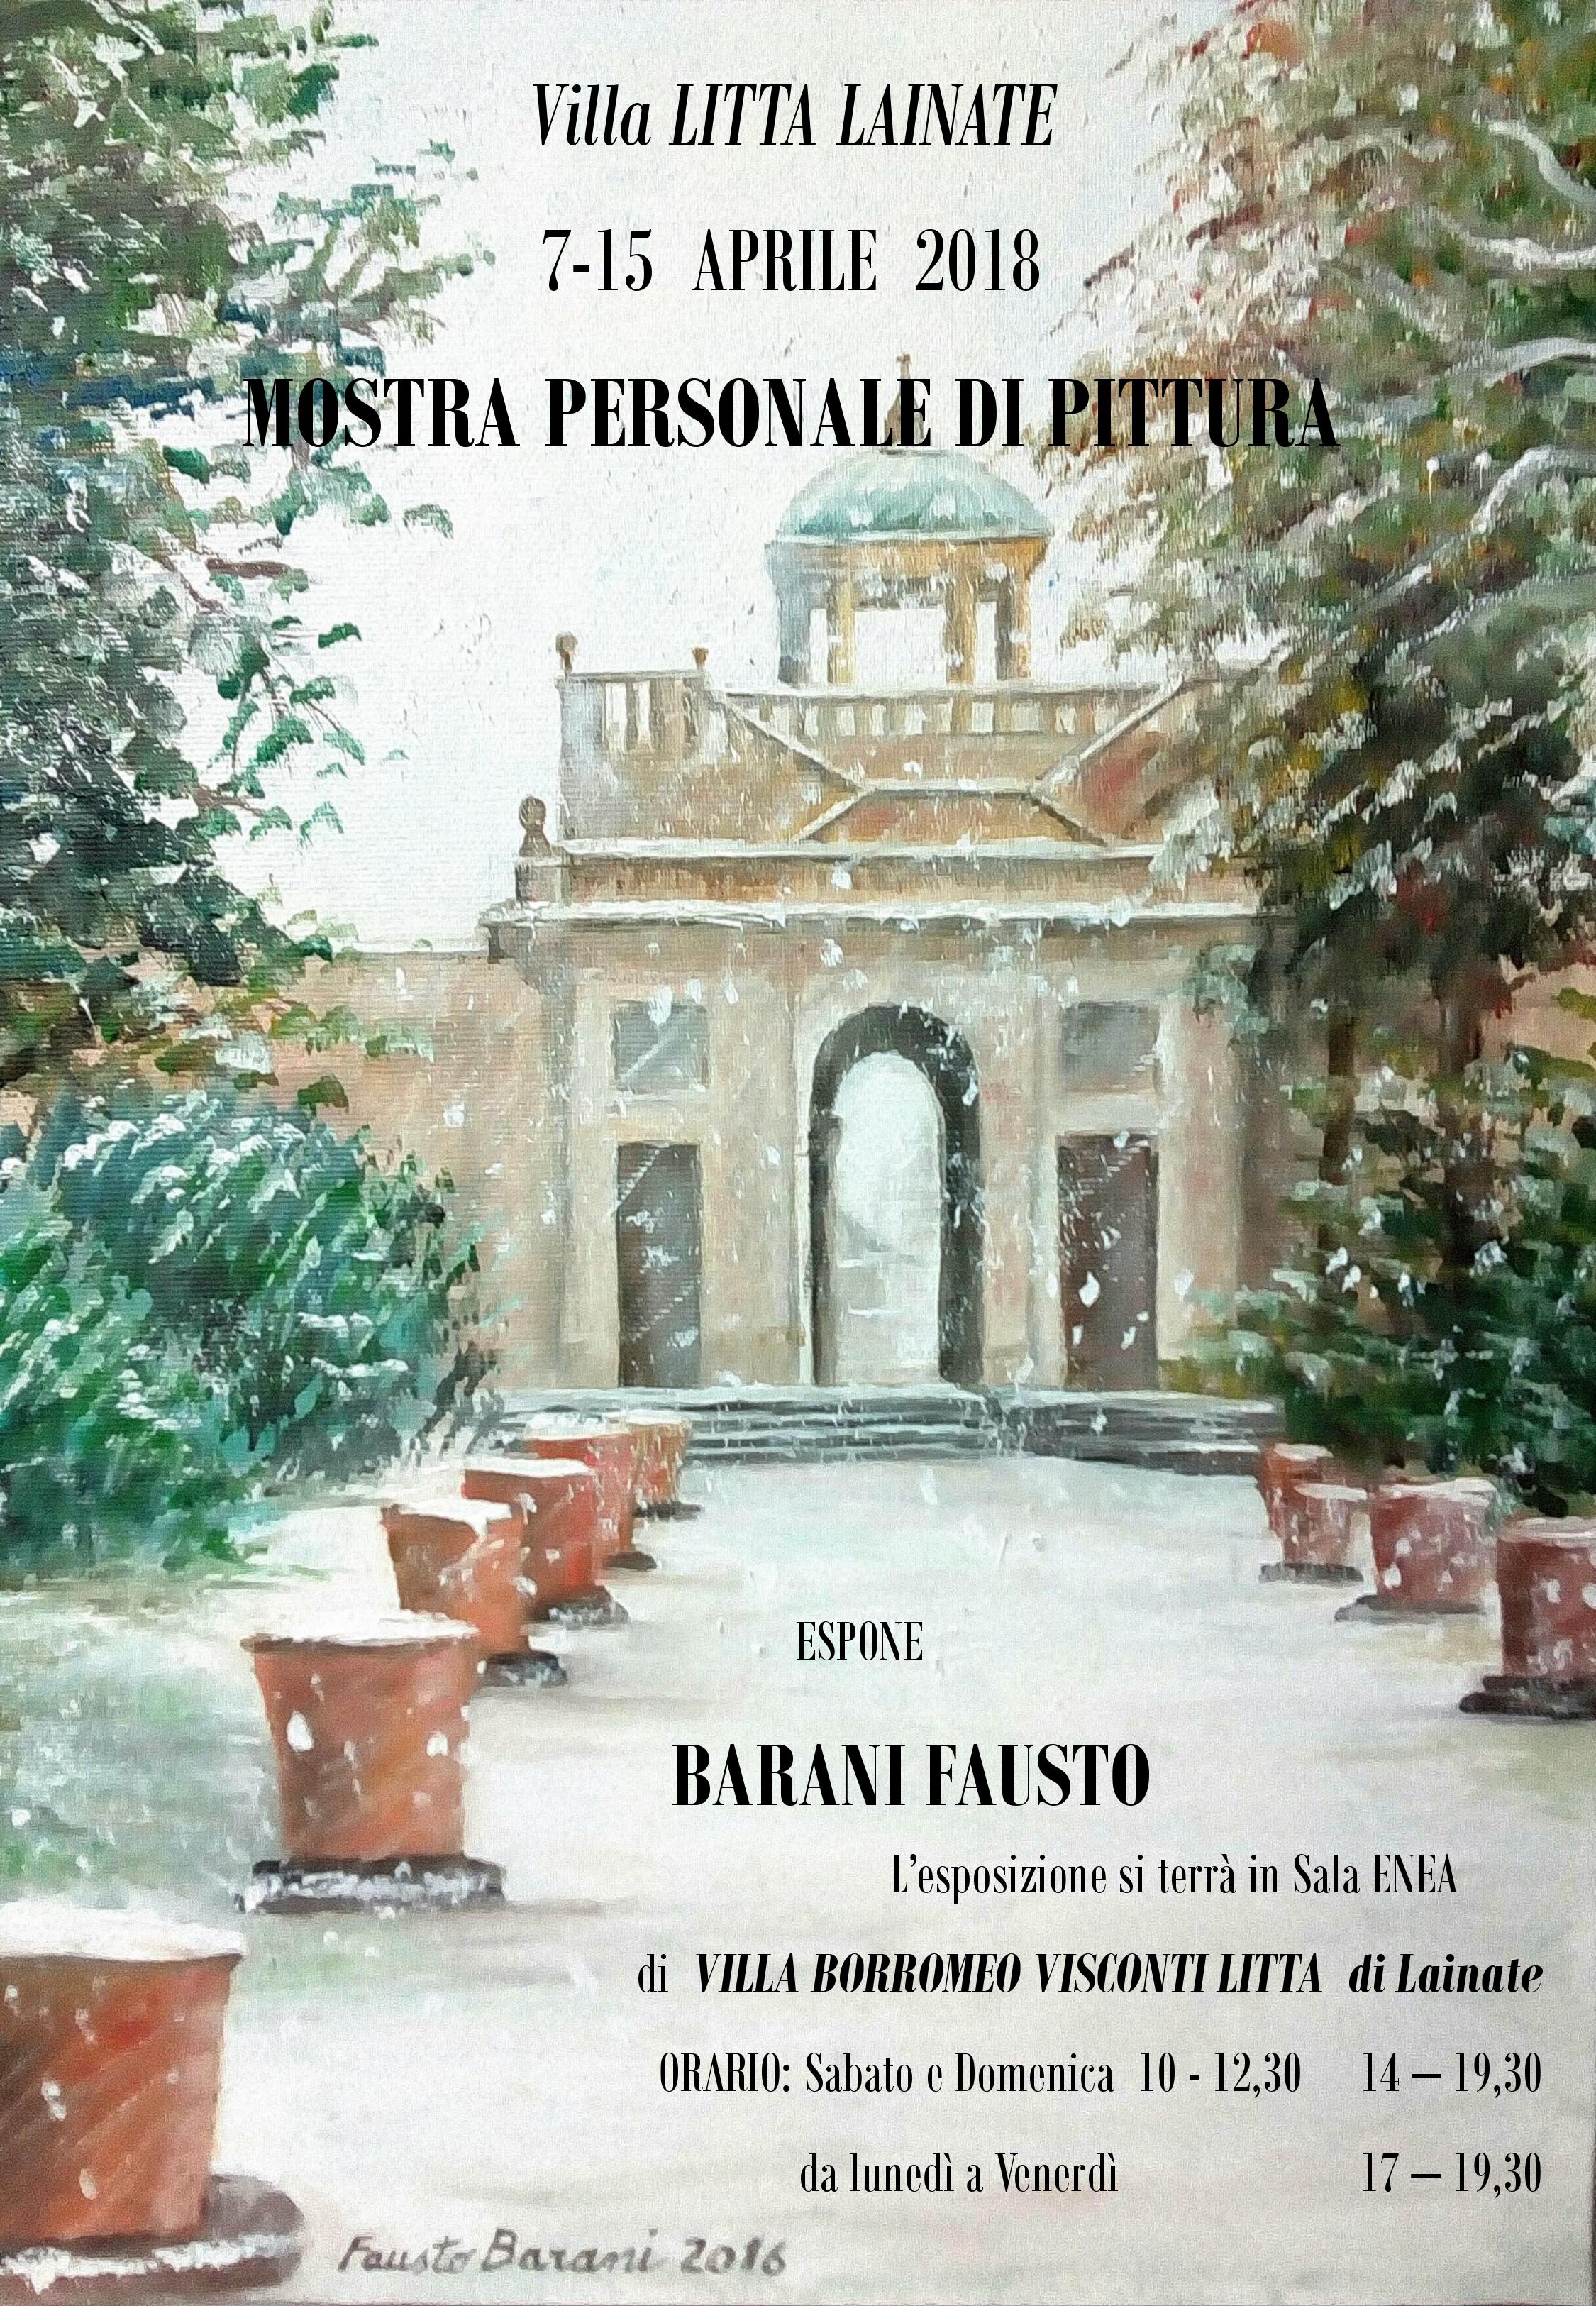 Angoli nascosti di Villa Litta - Personale di pittura